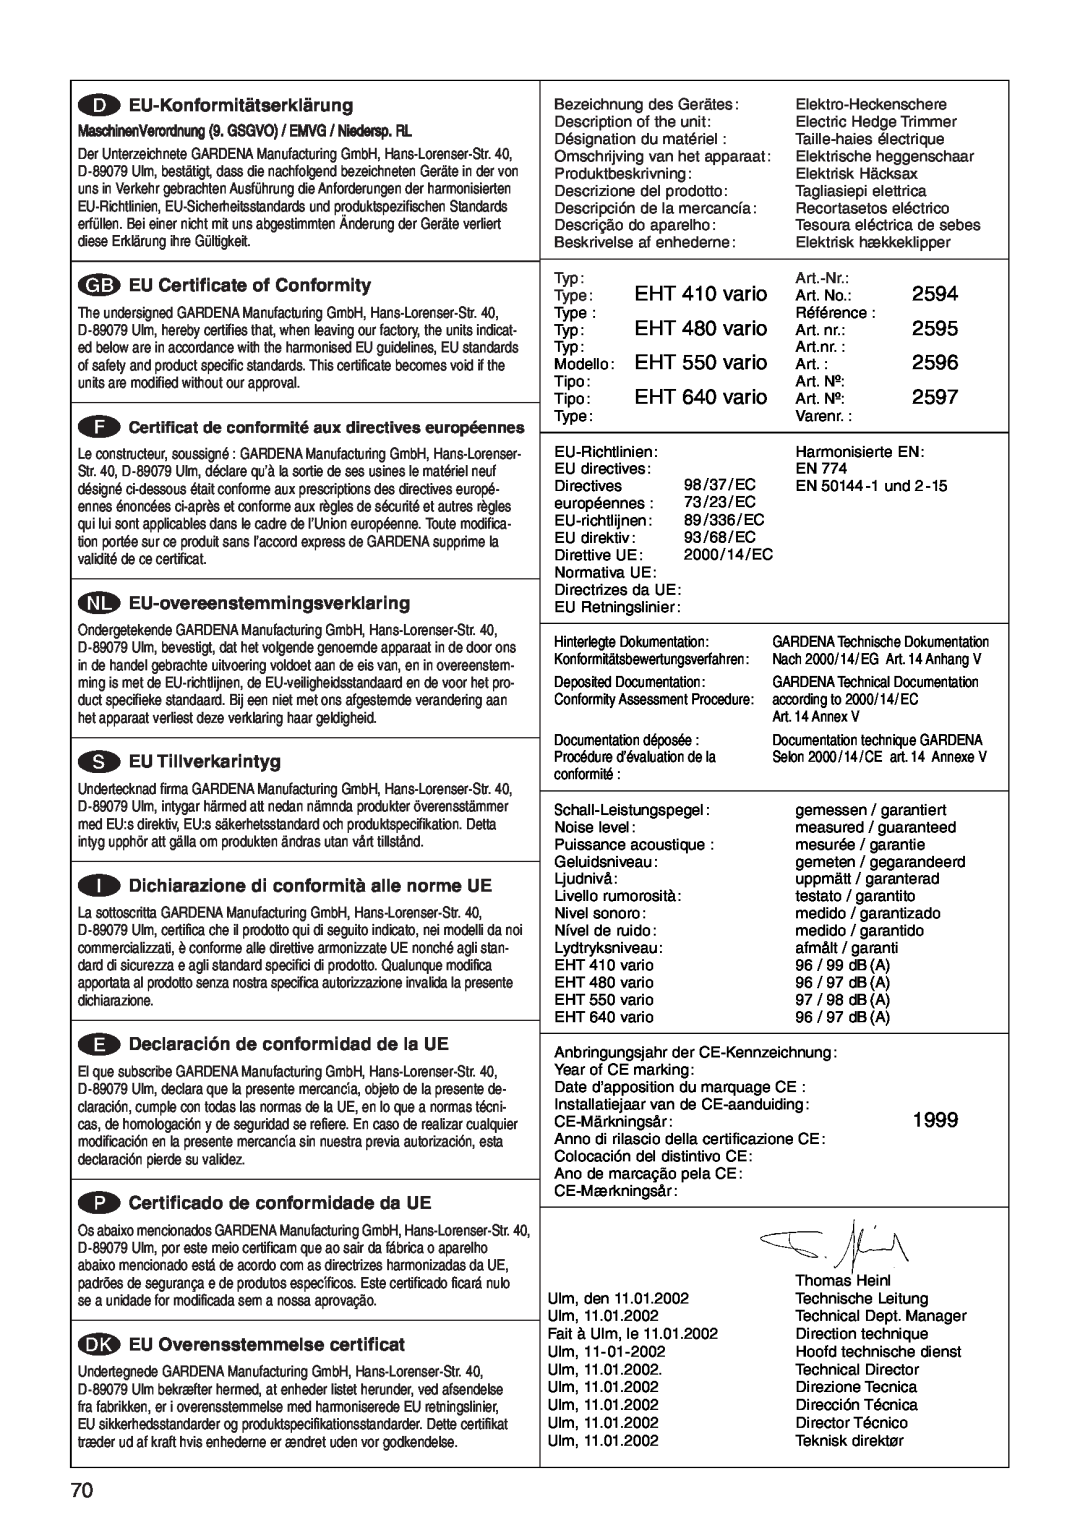 Gardena 550 EU-Konformitätserklärung, GEU Certificate of Conformity, NEU-overeenstemmingsverklaring, SEU Tillverkarintyg 